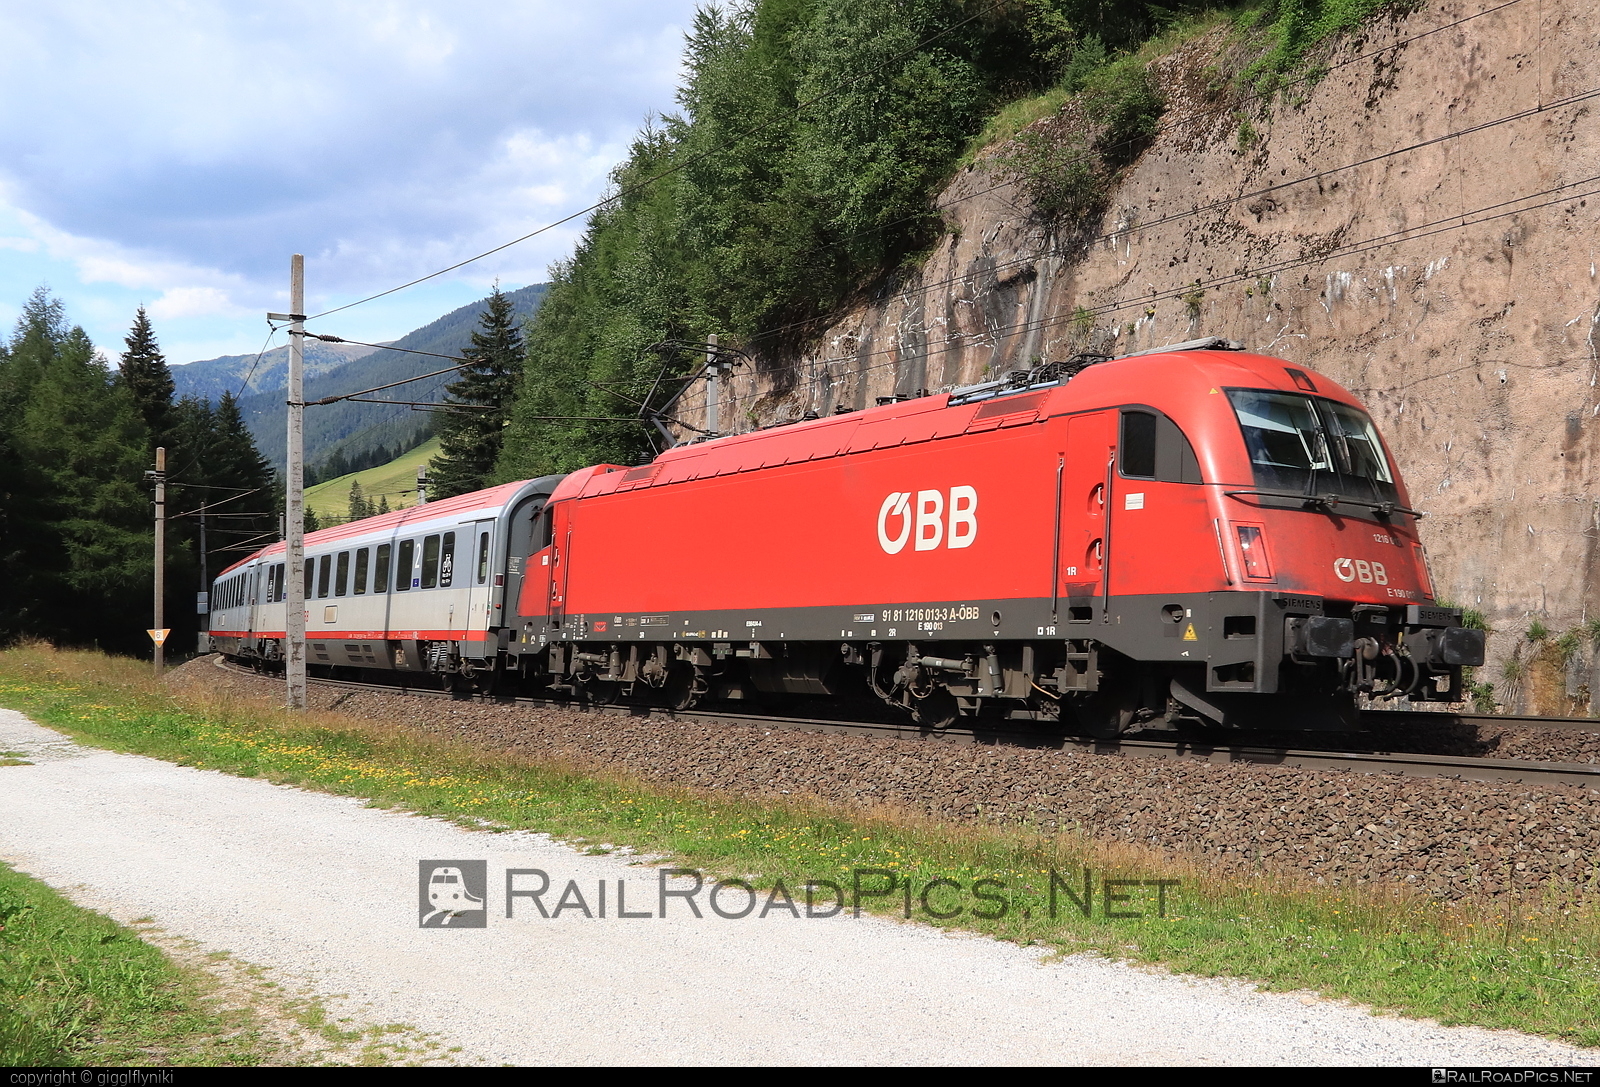 Siemens ES 64 U4 - 1216 013 operated by Österreichische Bundesbahnen #es64 #es64u4 #eurosprinter #obb #osterreichischebundesbahnen #siemens #siemensEs64 #siemensEs64u4 #siemenstaurus #taurus #tauruslocomotive